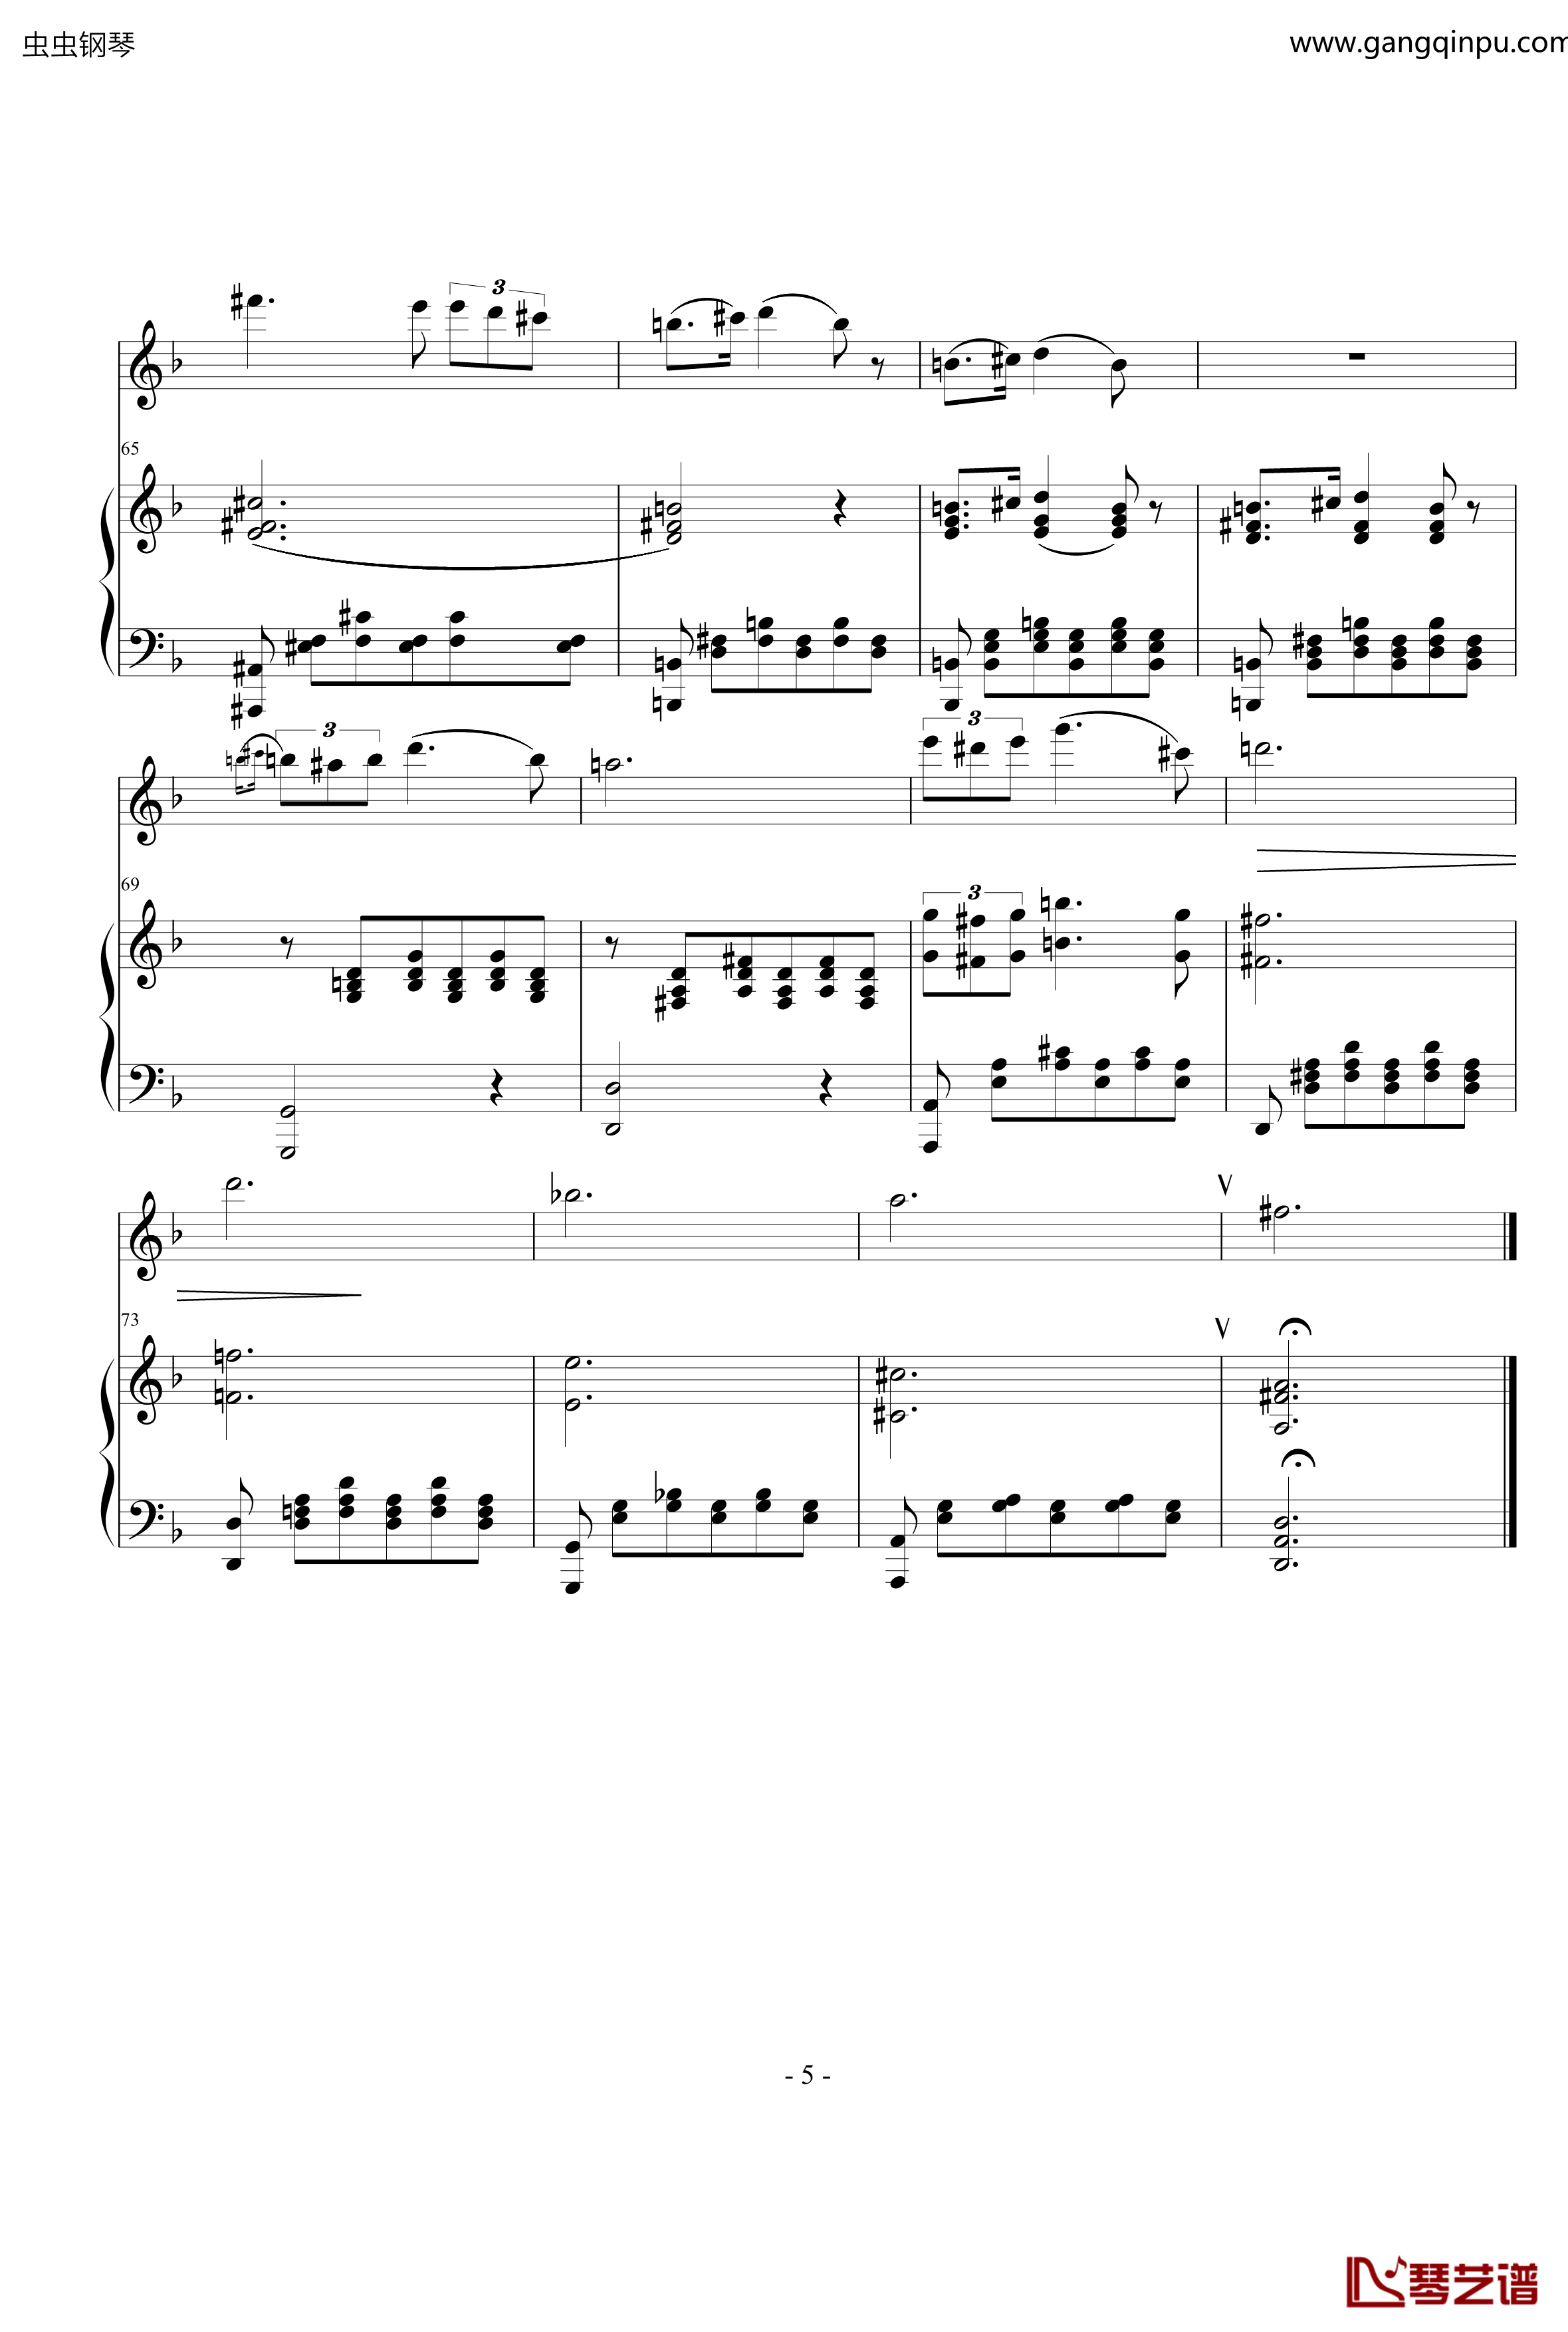 小夜曲钢琴谱-ove 格式长笛笛钢琴伴奏-舒伯特5